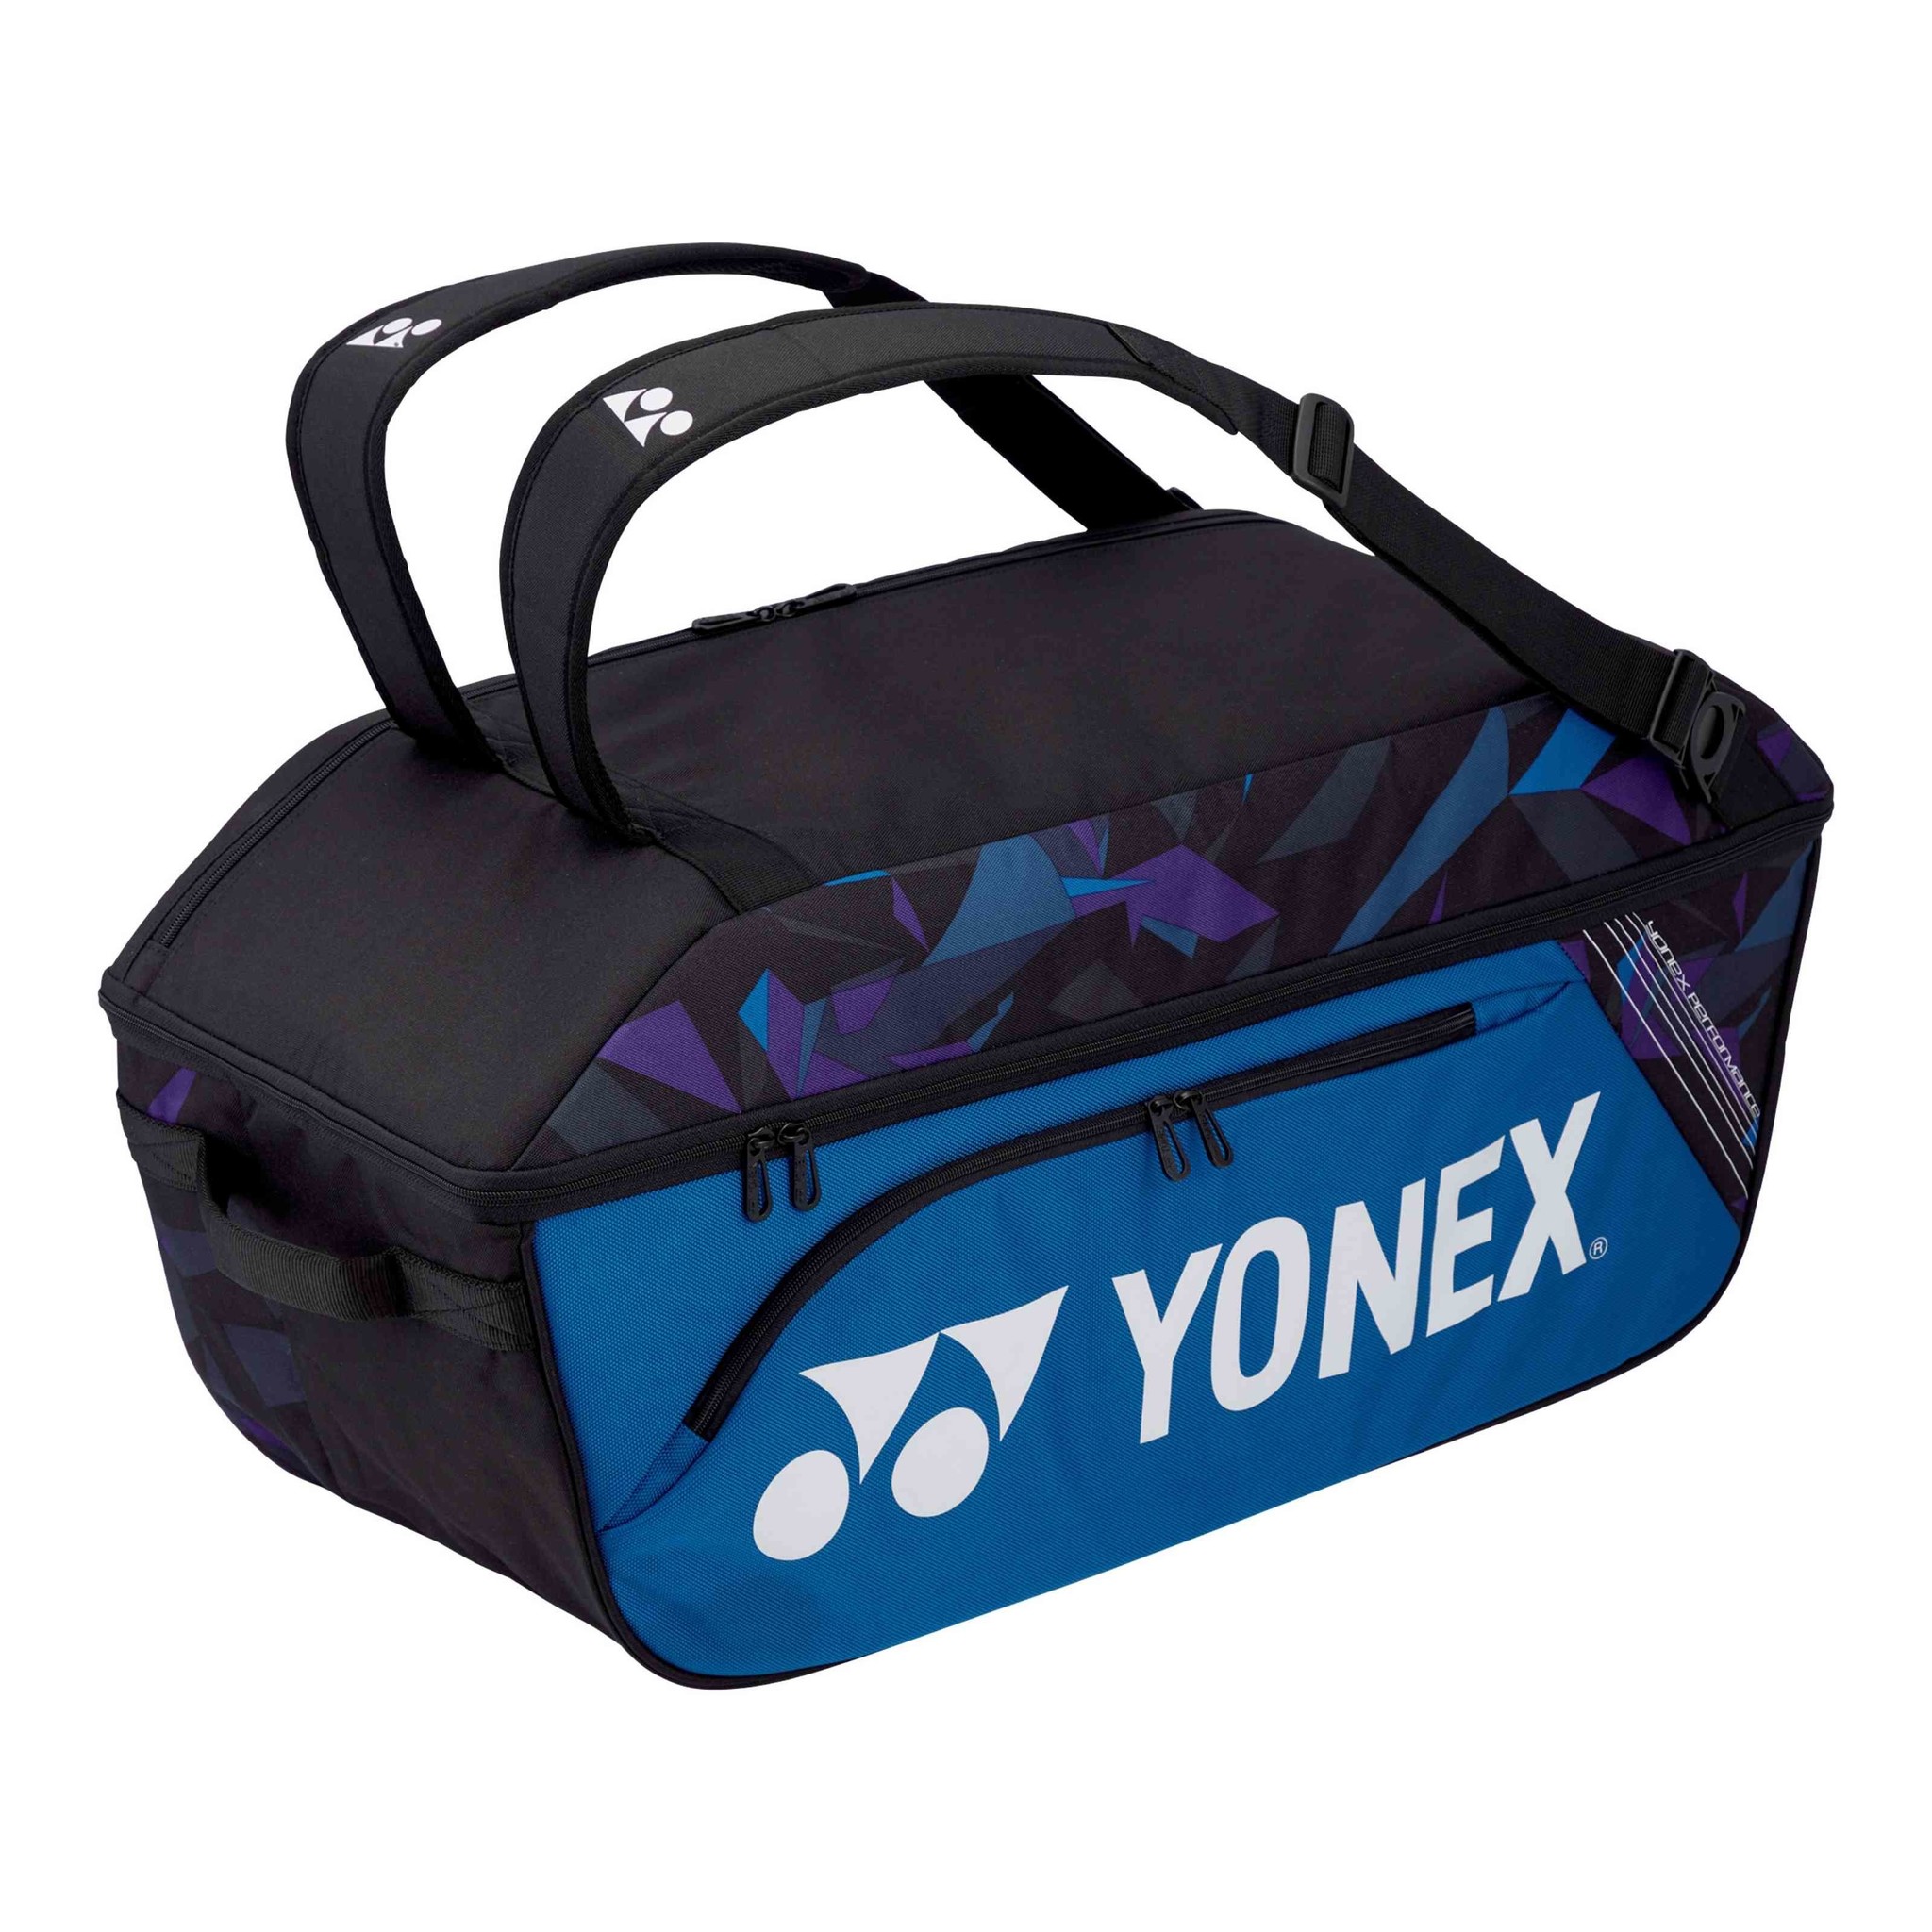 YONEX MOCHILA TENIS YONEX 92312 PRO S AZUL YONEX